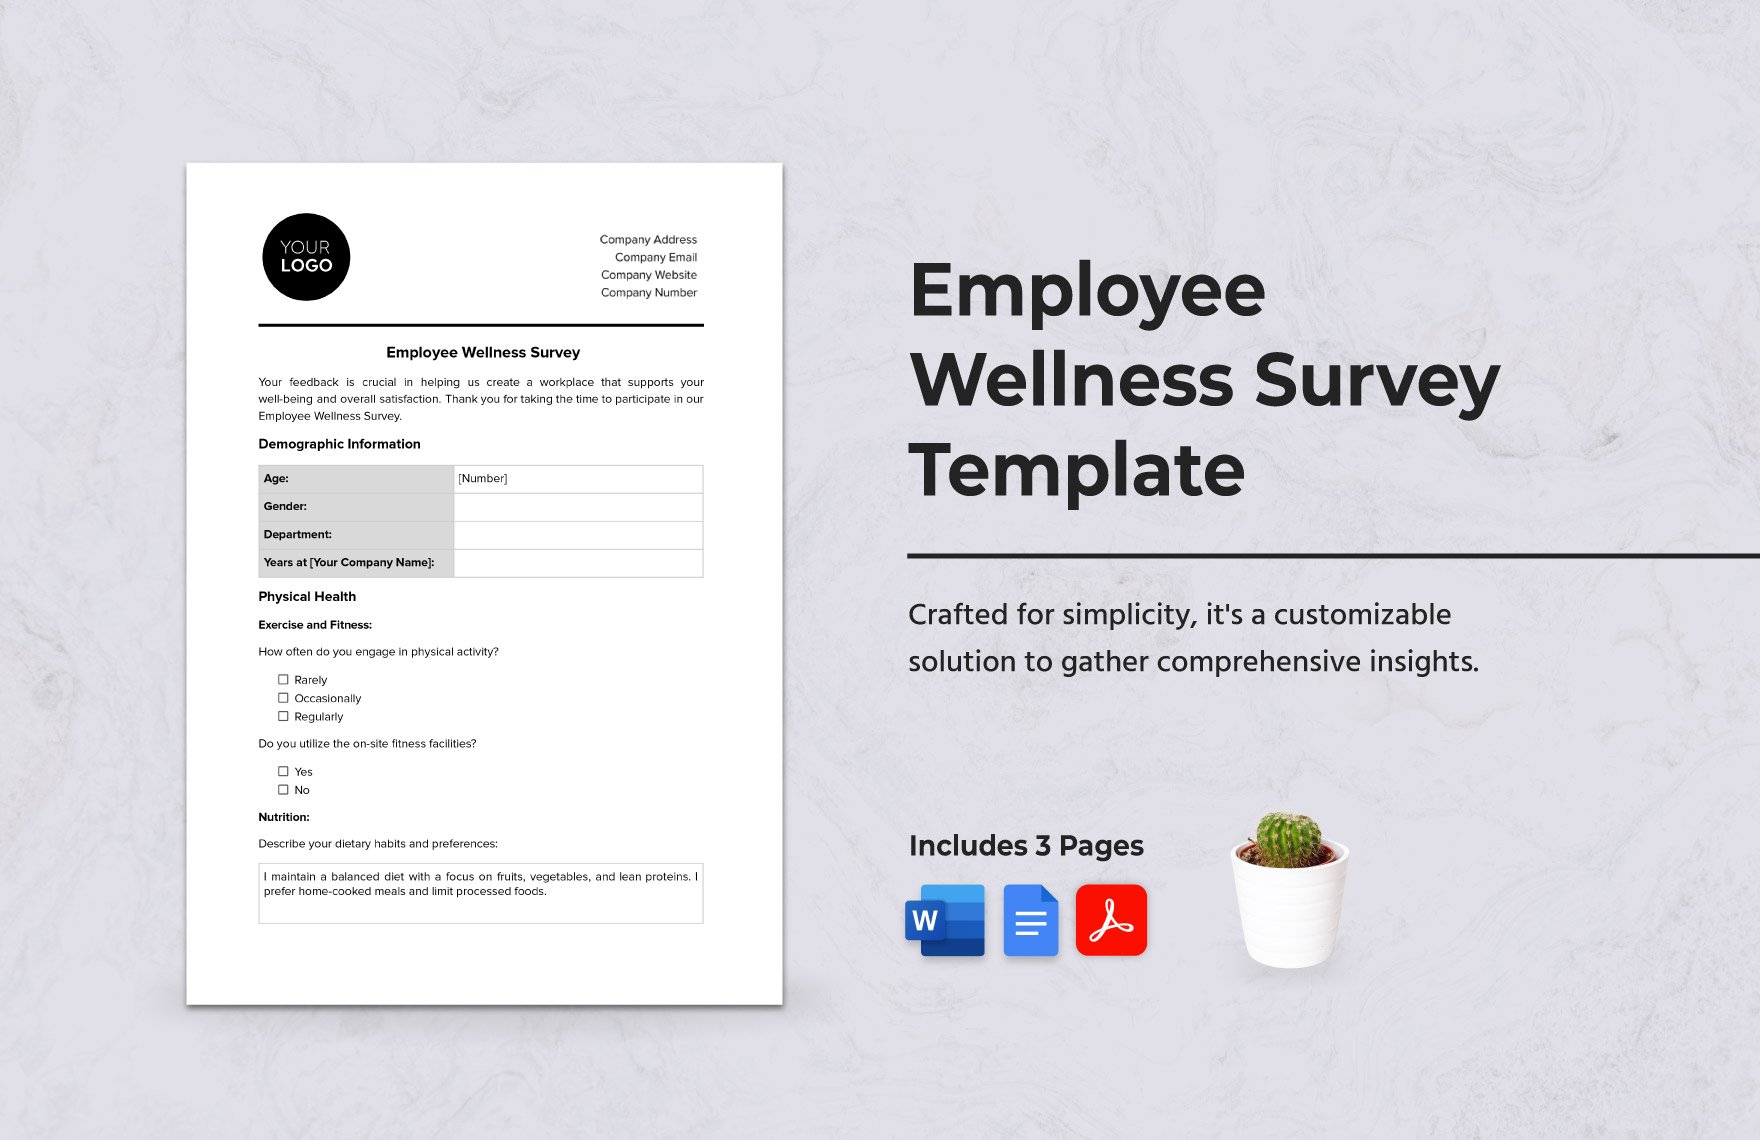 Employee Wellness Survey Template